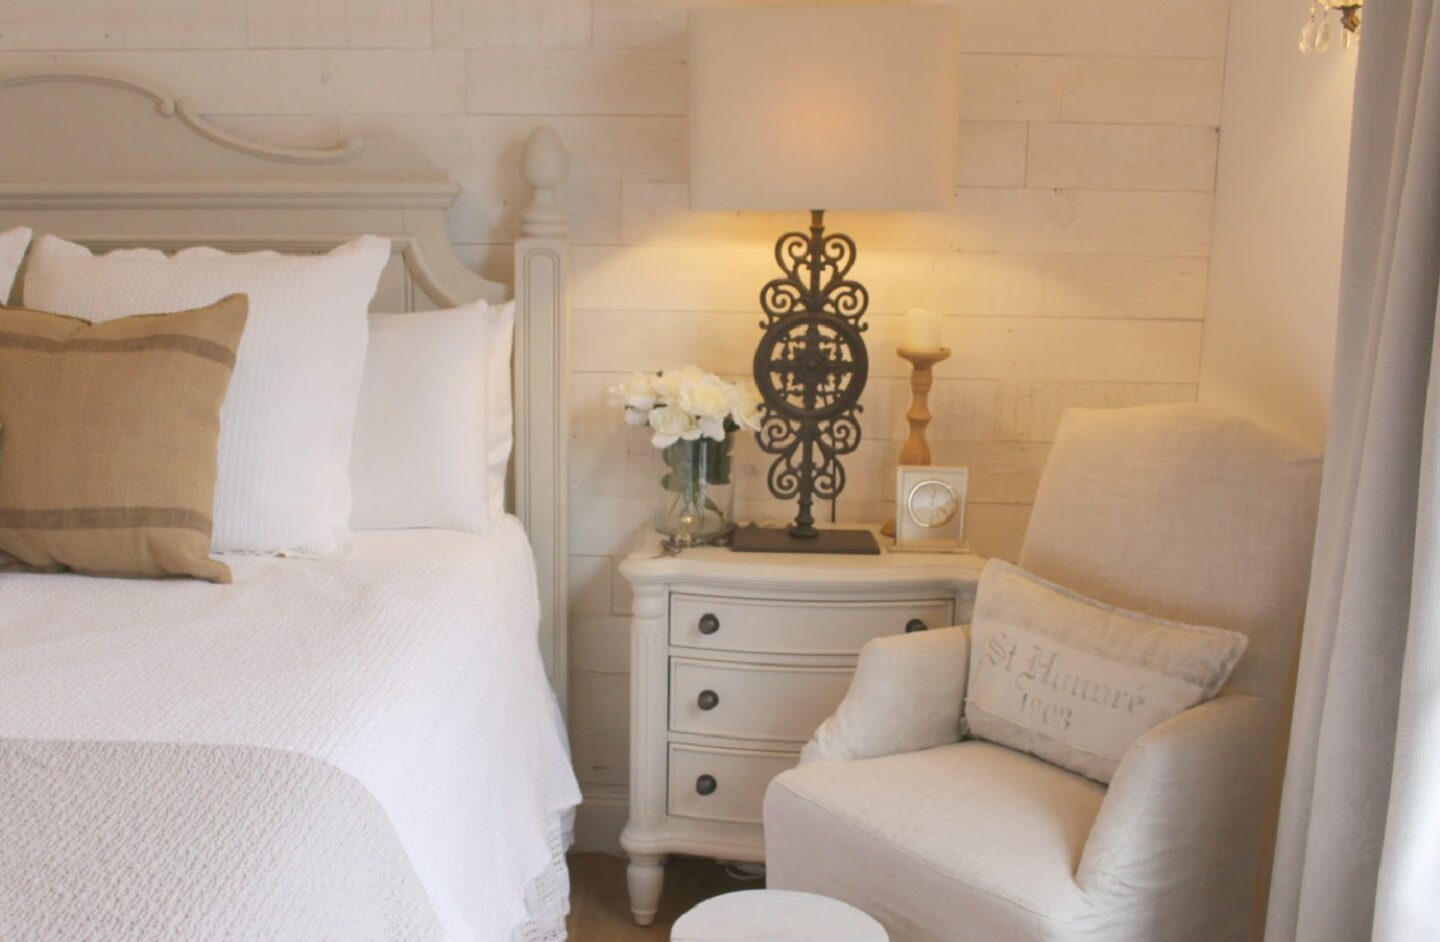 BM Revere Pewter on bedroom furniture - Hello Lovely Studio. #reverepewter #greypaintcolors